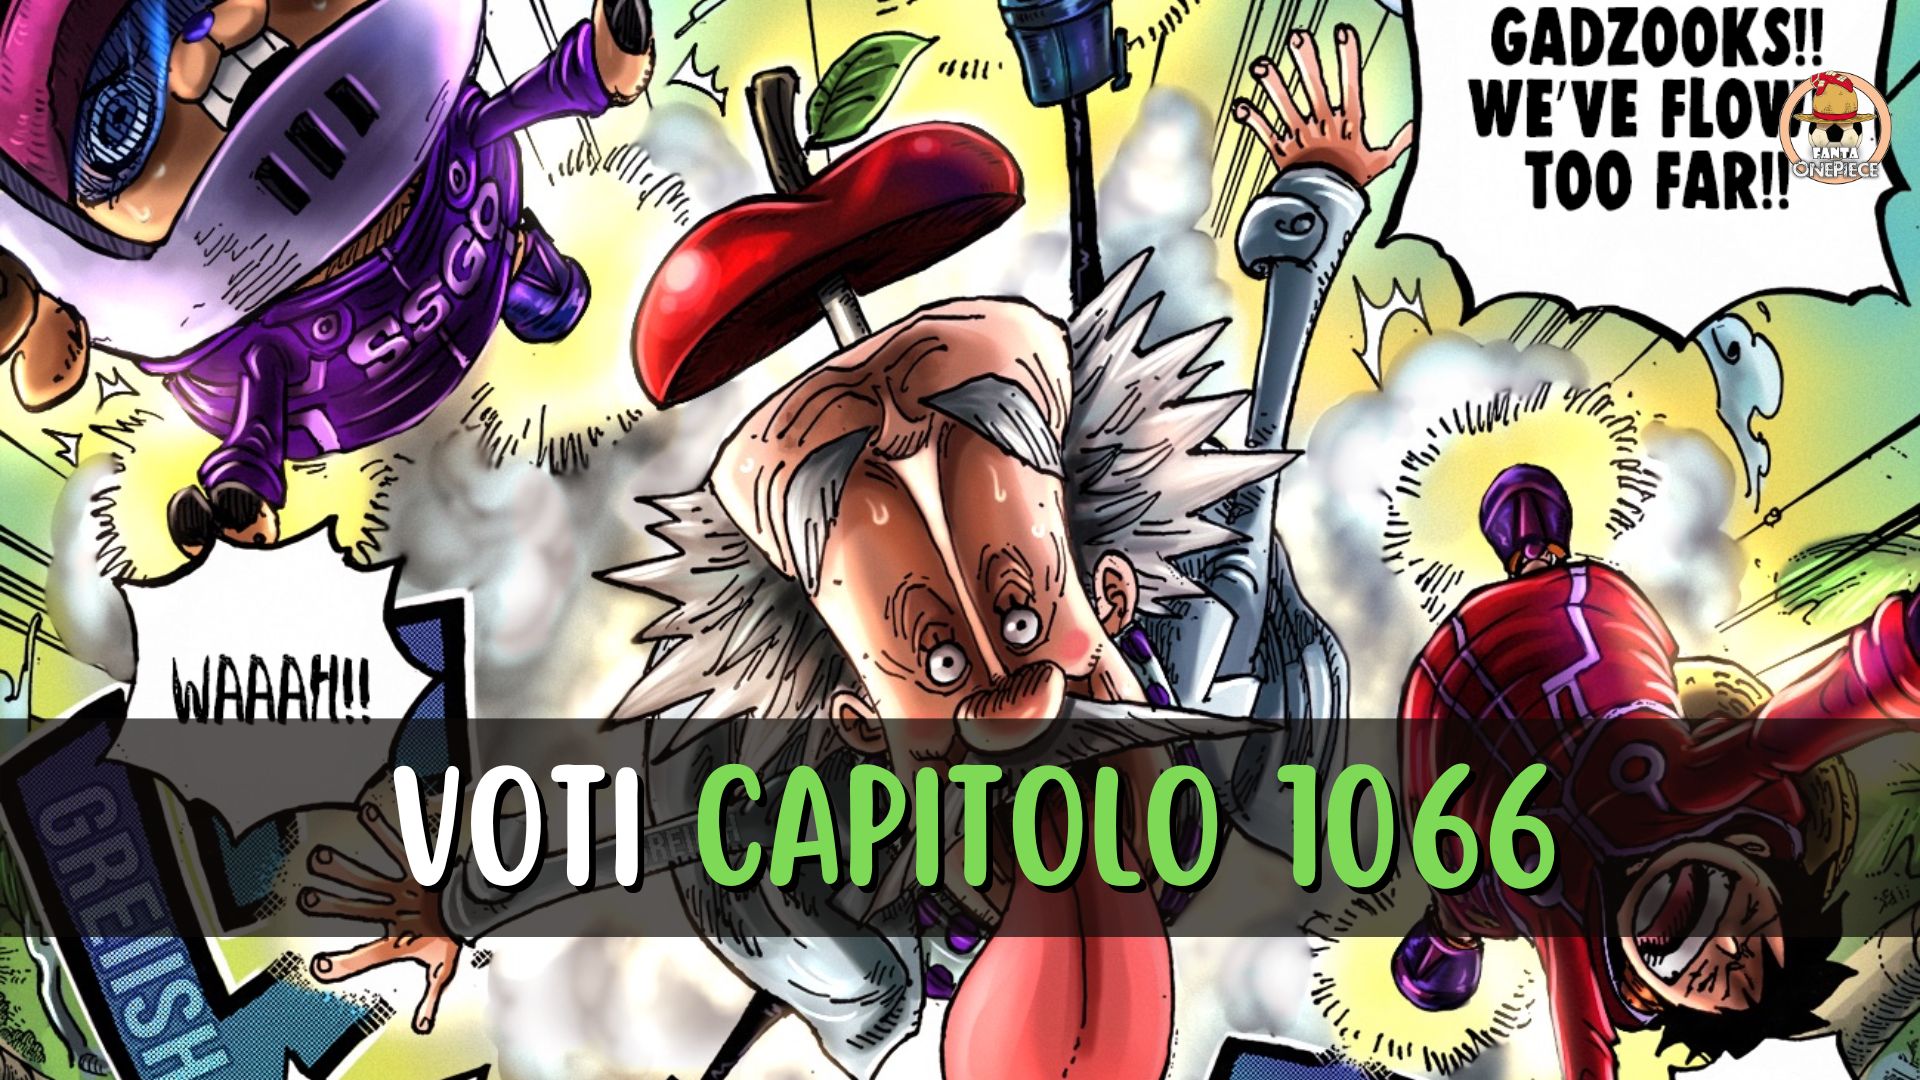 One Piece capitolo 1066: i voti dei personaggi [Fanta One Piece]